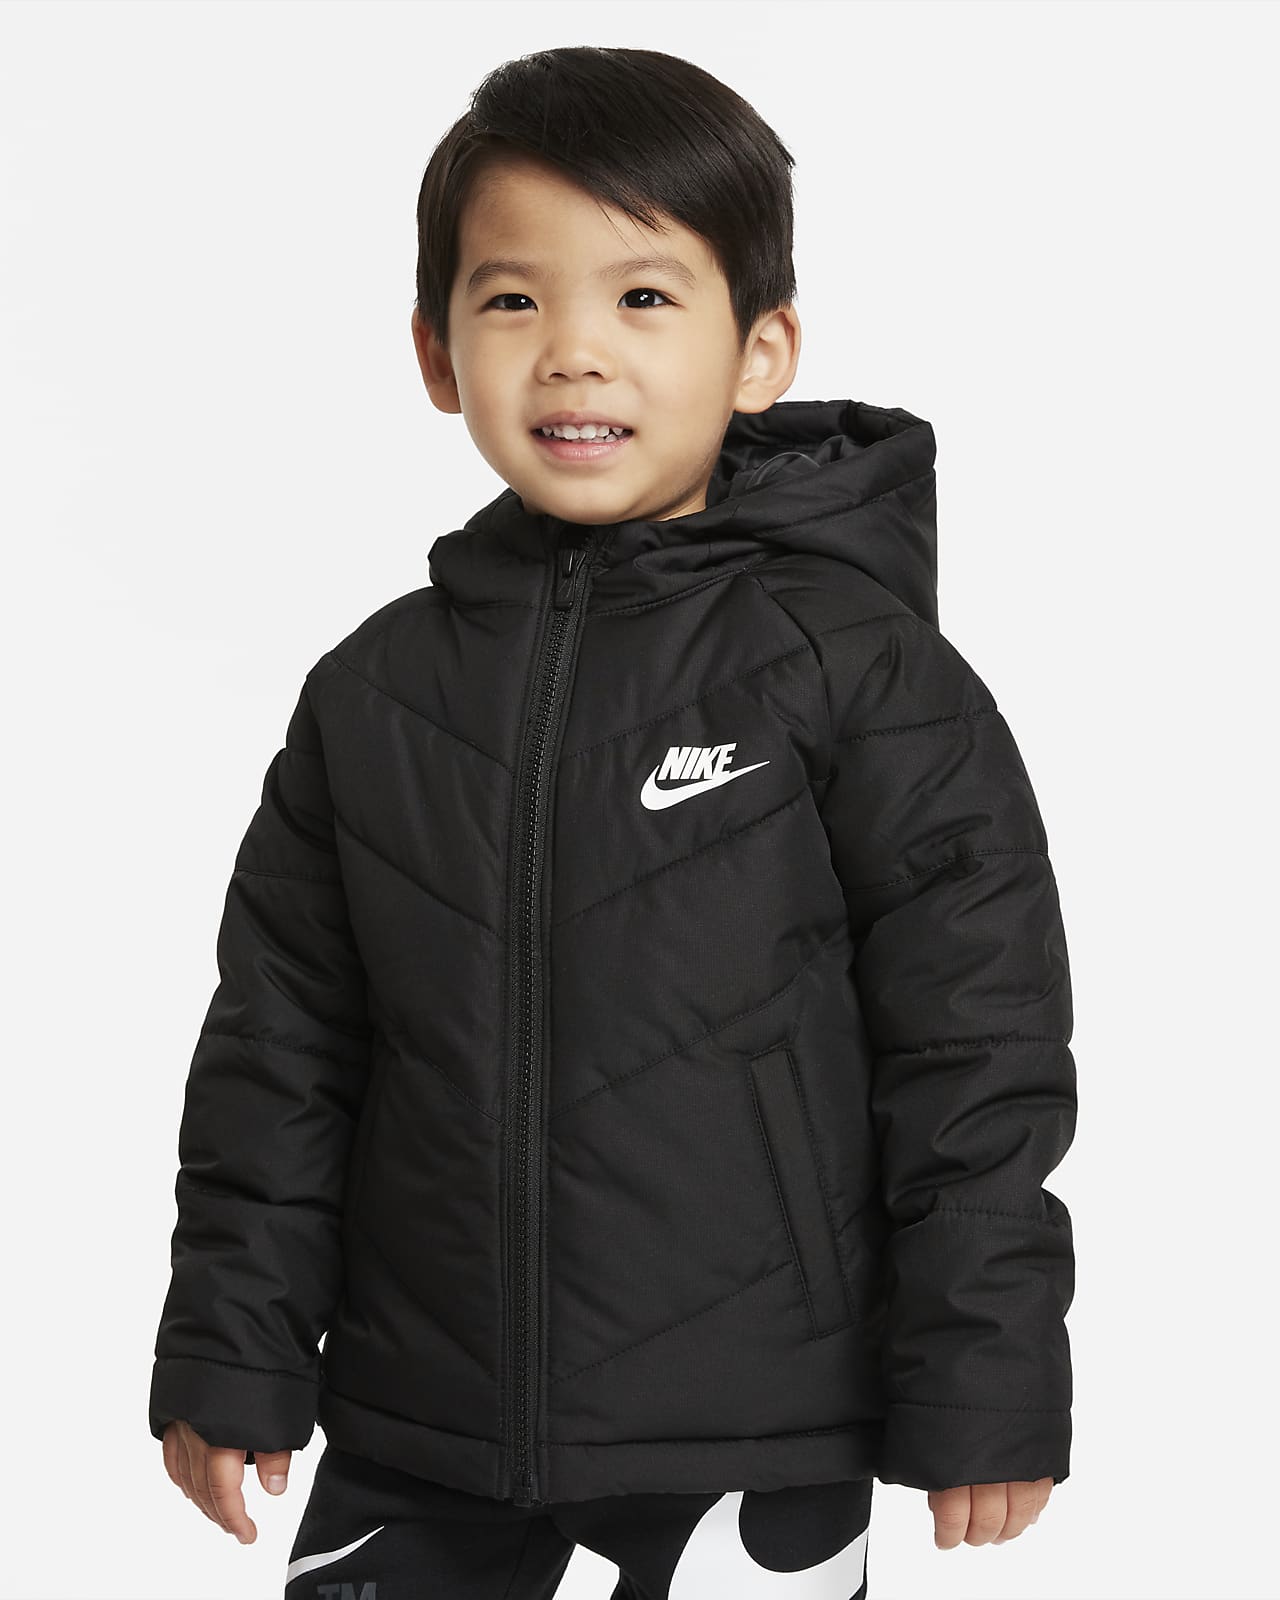 Nike Sportswear Chaqueta acolchada - Niño/a pequeño/a